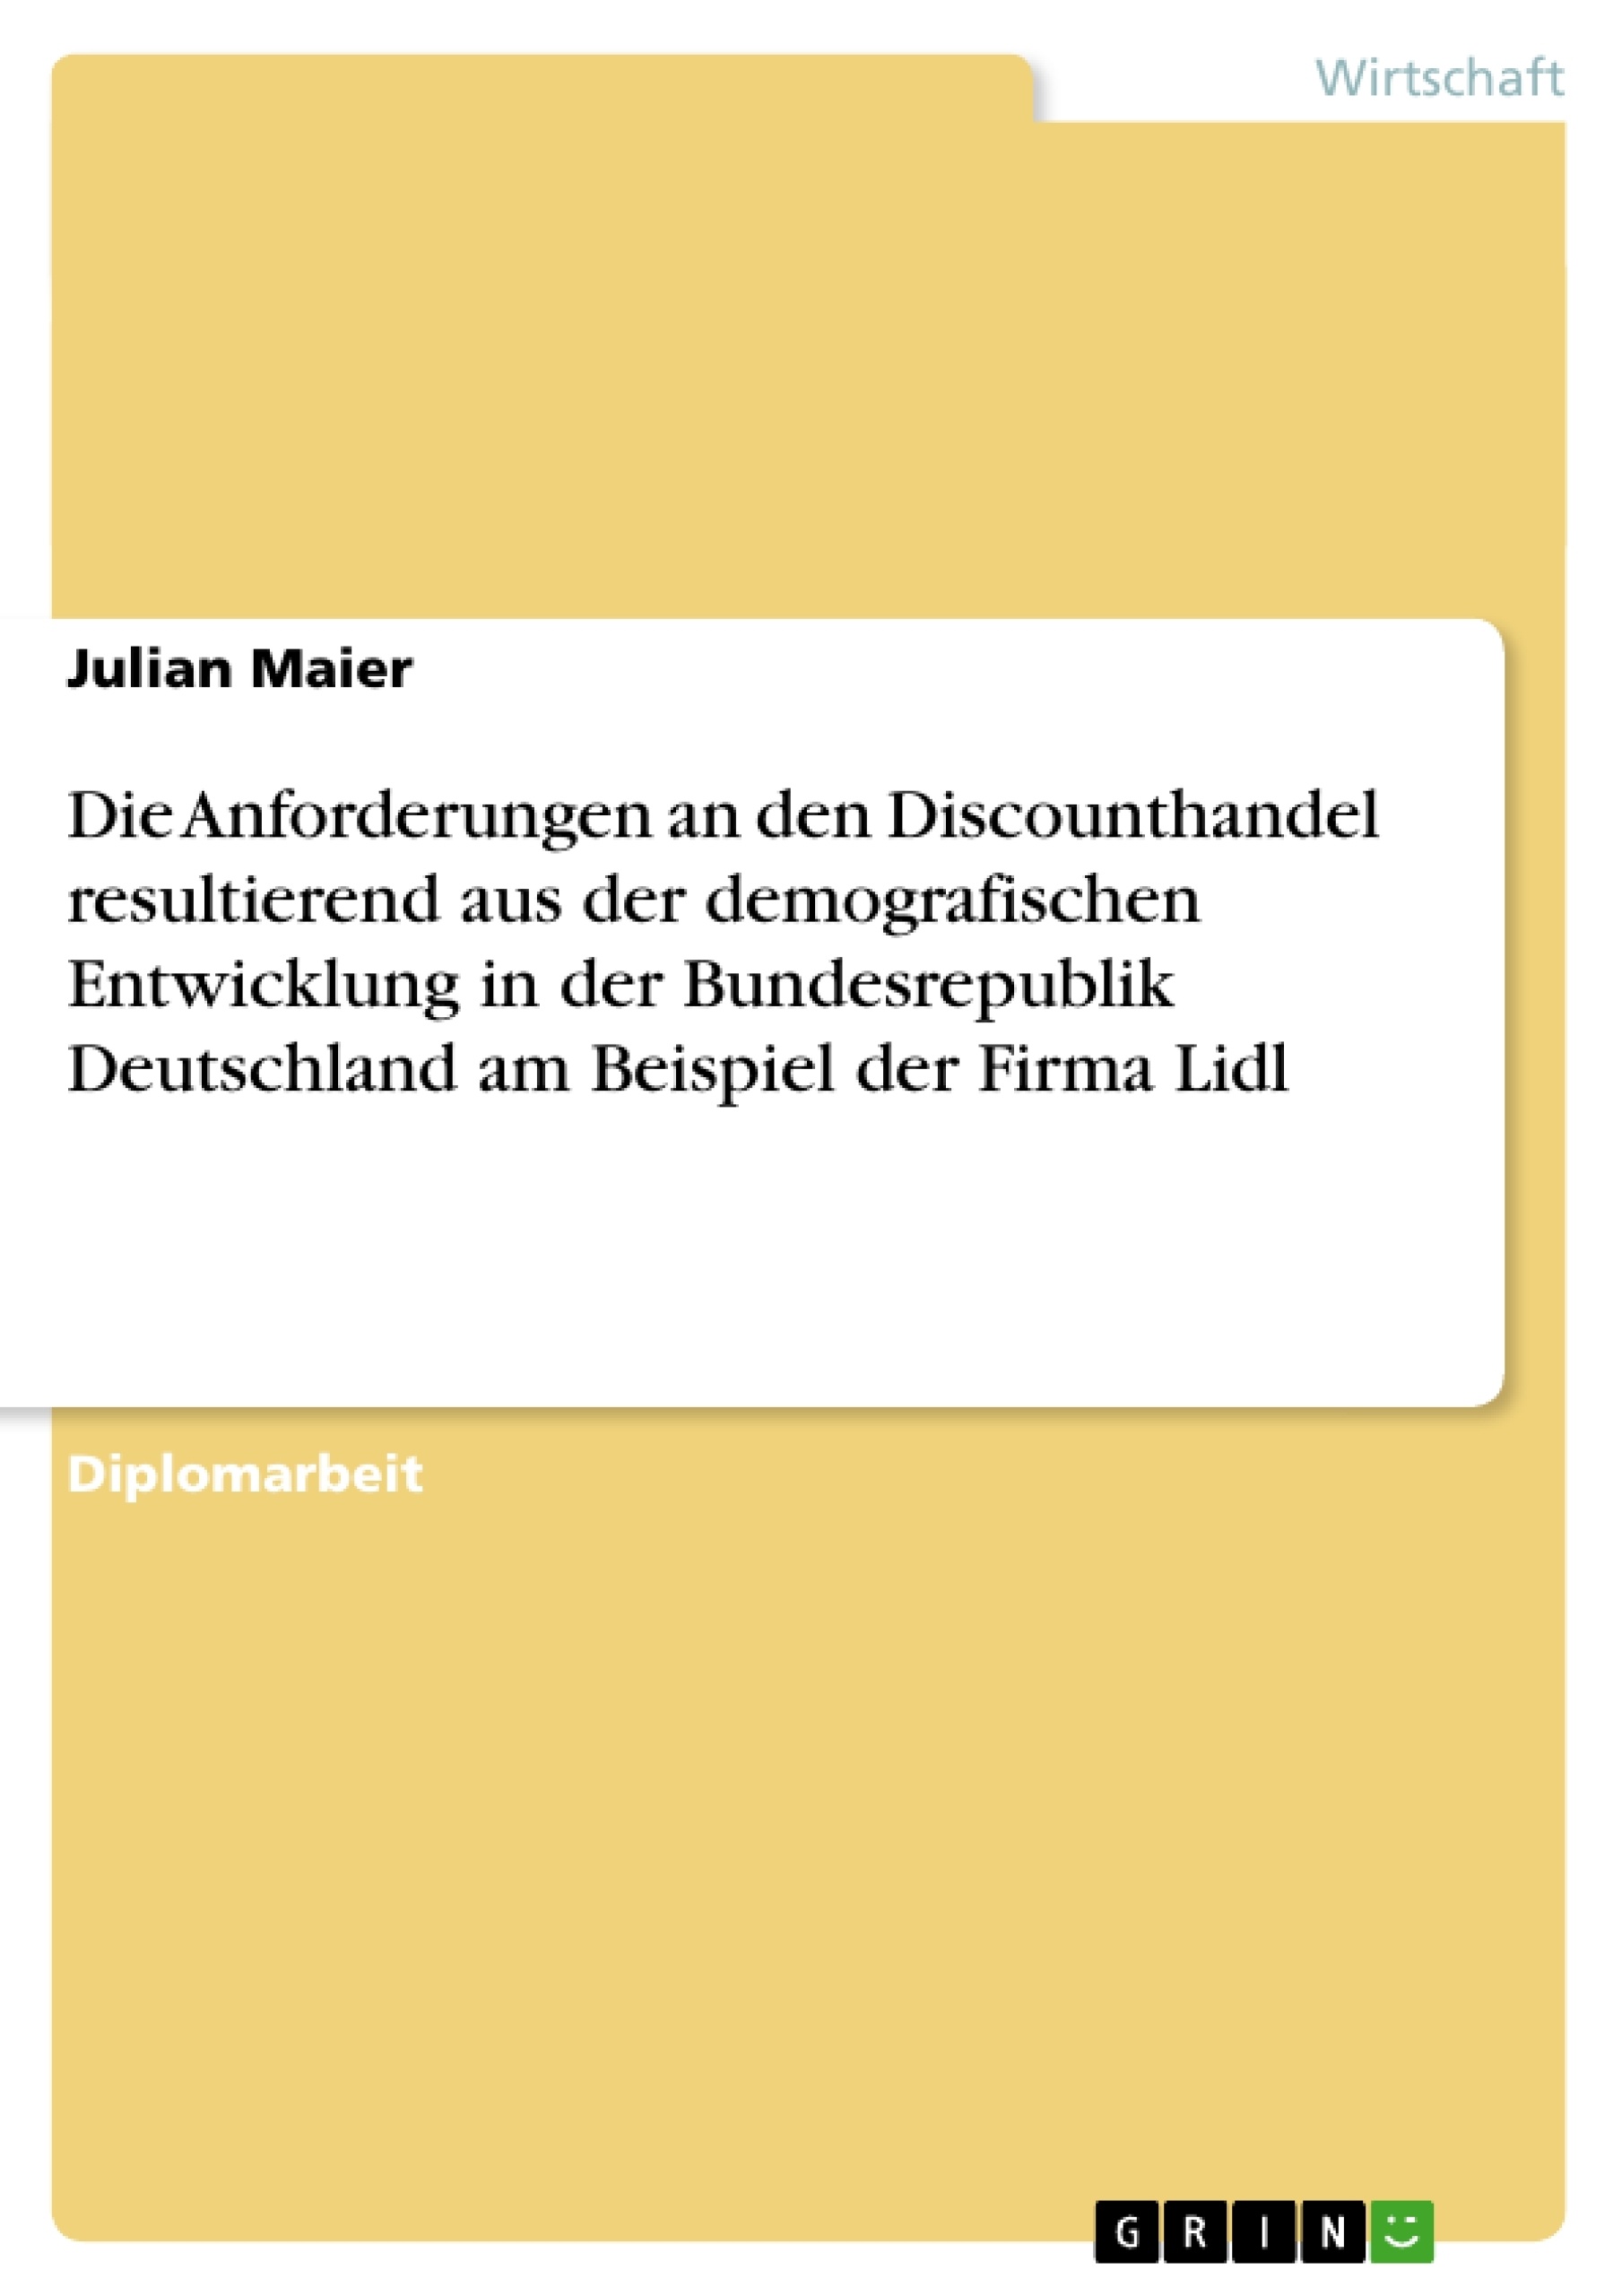 Título: Die Anforderungen an den Discounthandel resultierend aus der demografischen Entwicklung in der Bundesrepublik Deutschland. Die Firma Lidl